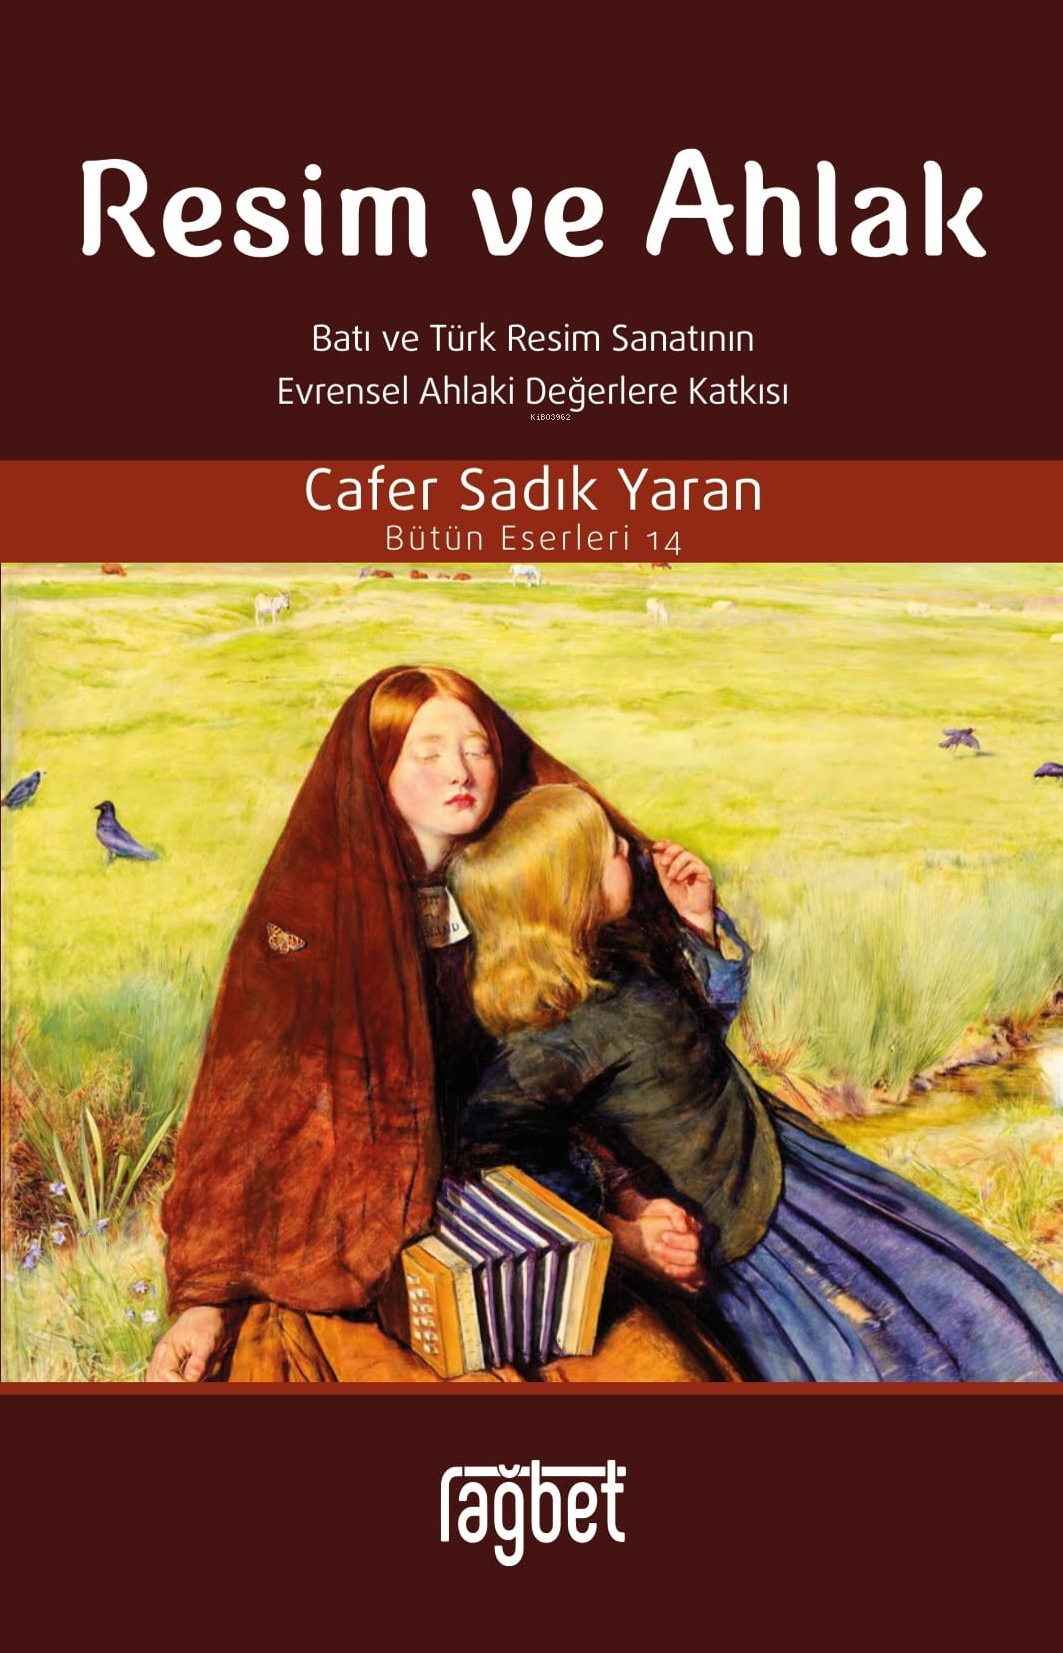 Resim ve Ahlak;(Batı ve Türk Resim Sanatının Evrensel Ahlaki Değerlere Katkısı)